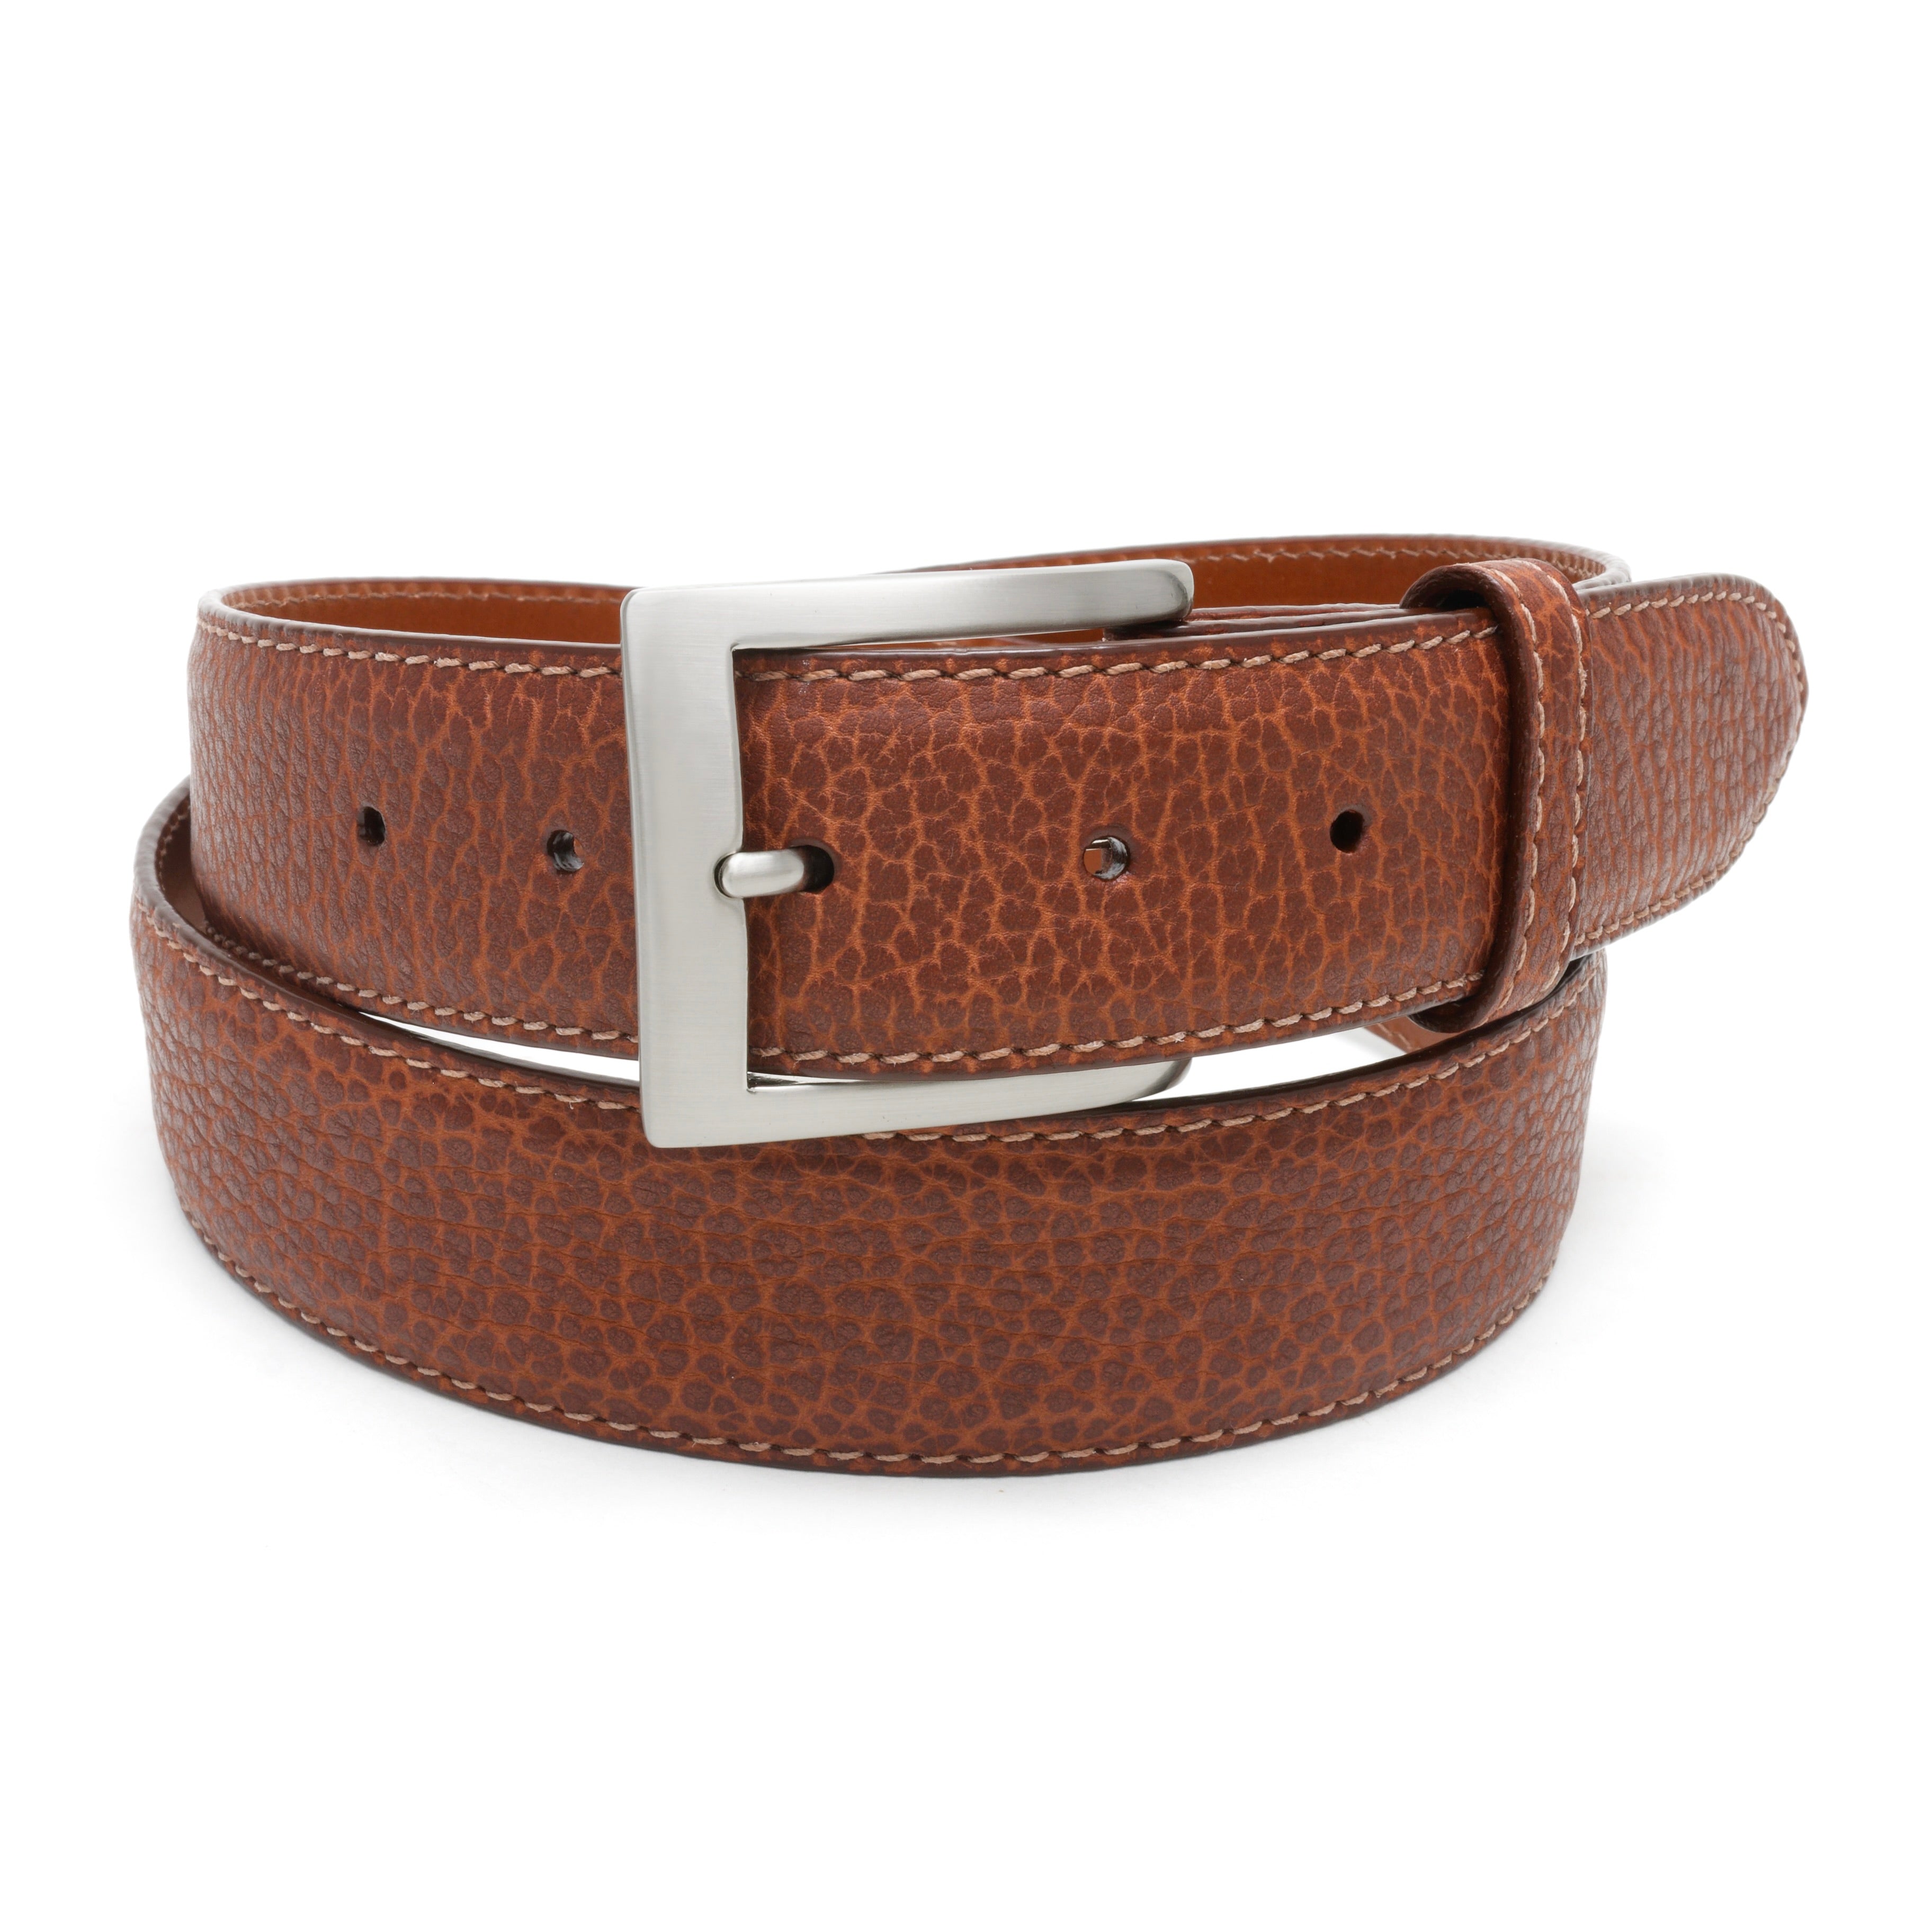 Bison leather dress belt for men